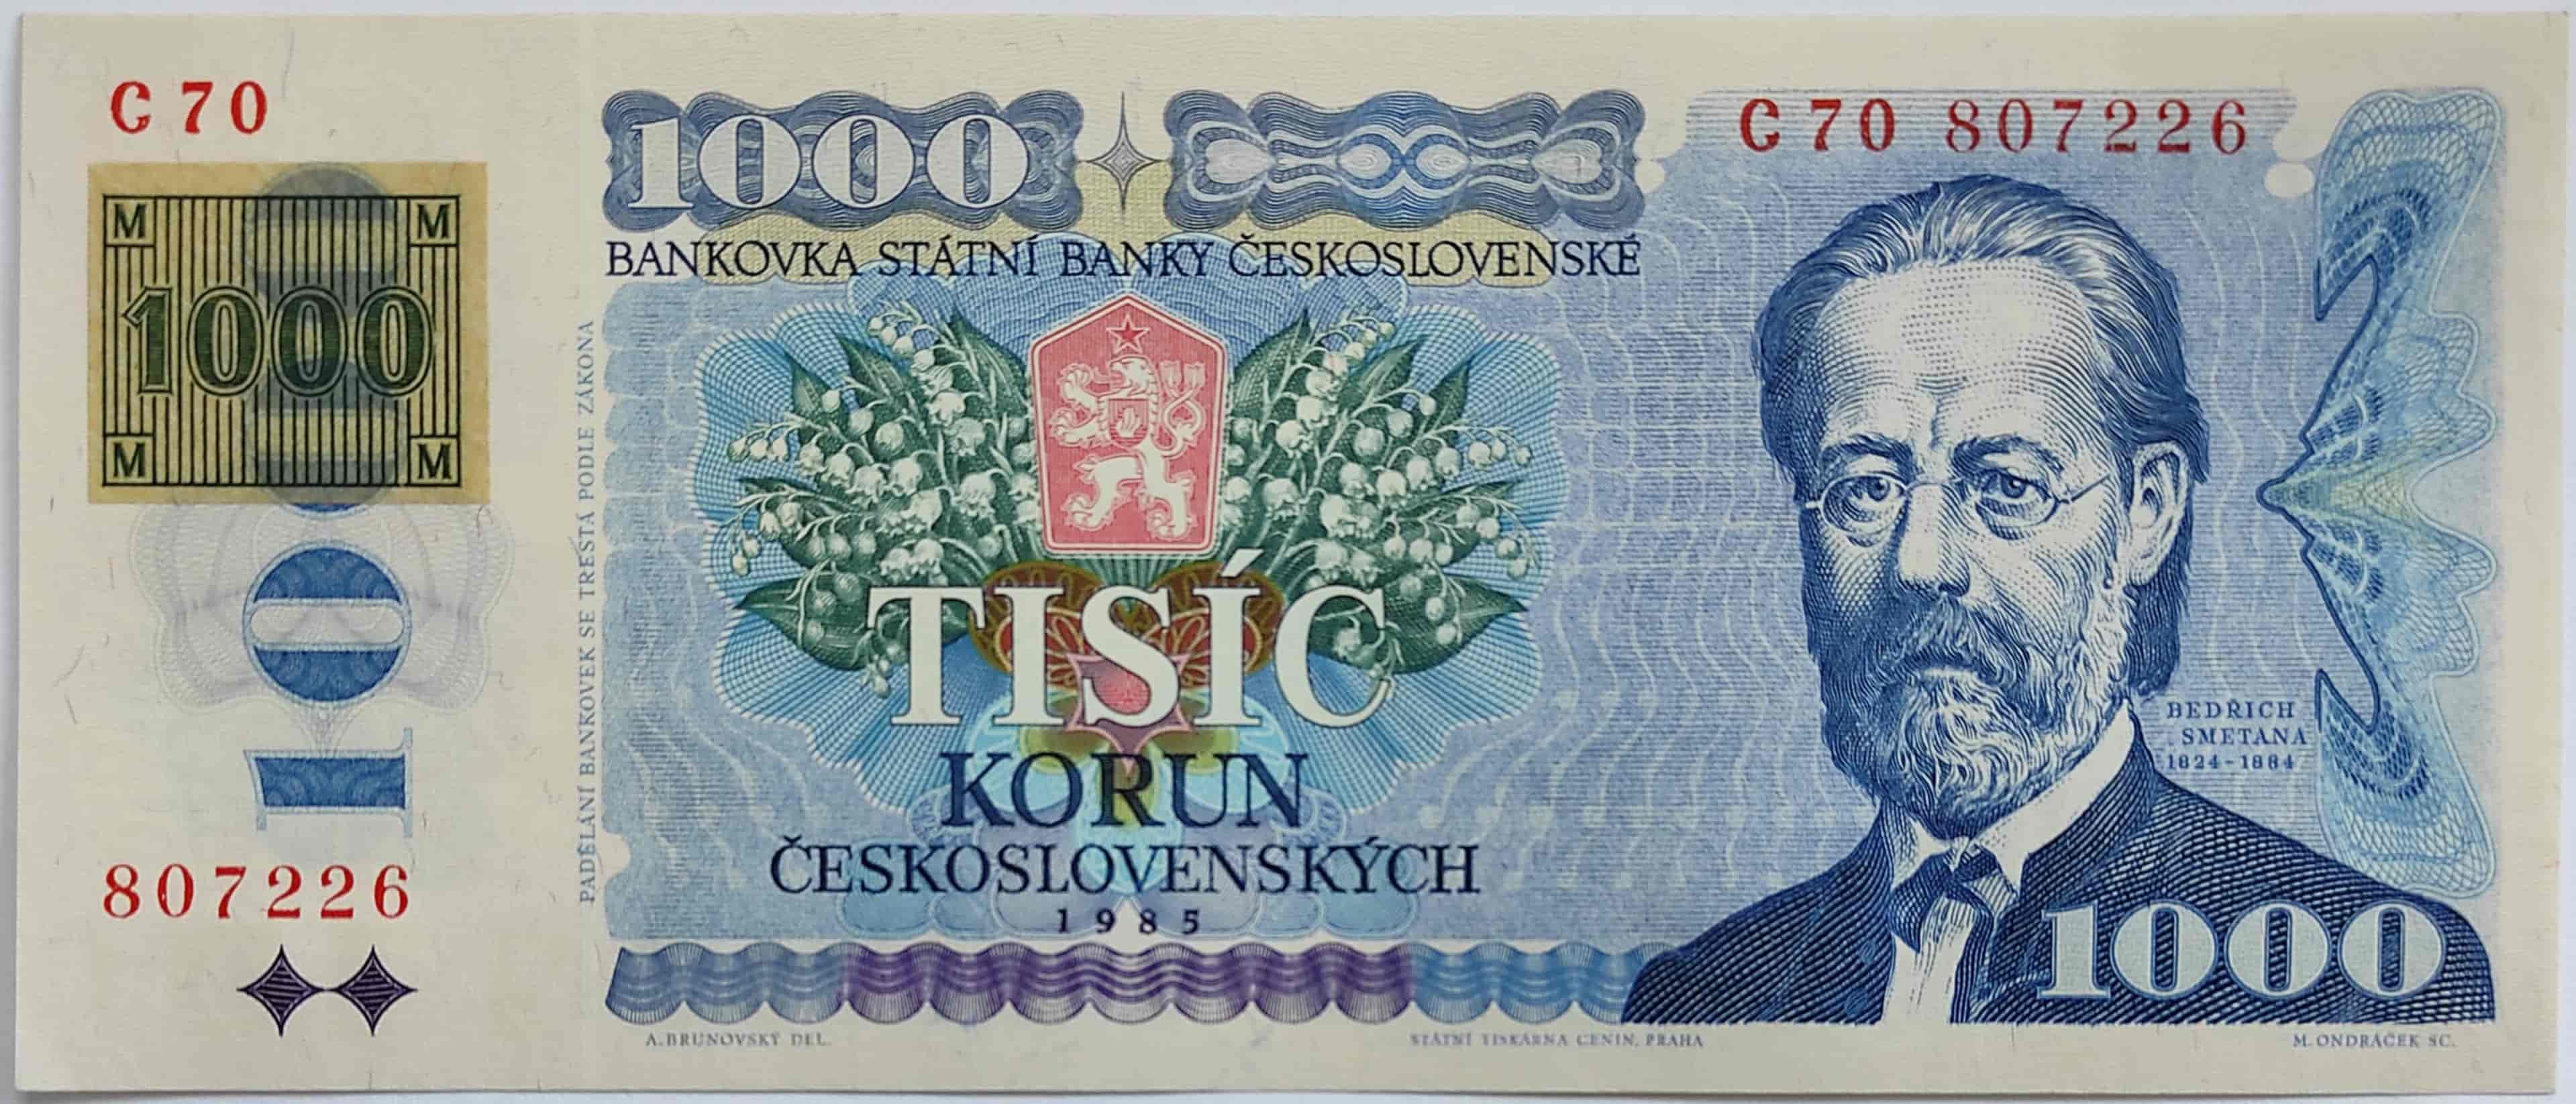 1000 Kčs 1985 C70 ČR kolok lepený